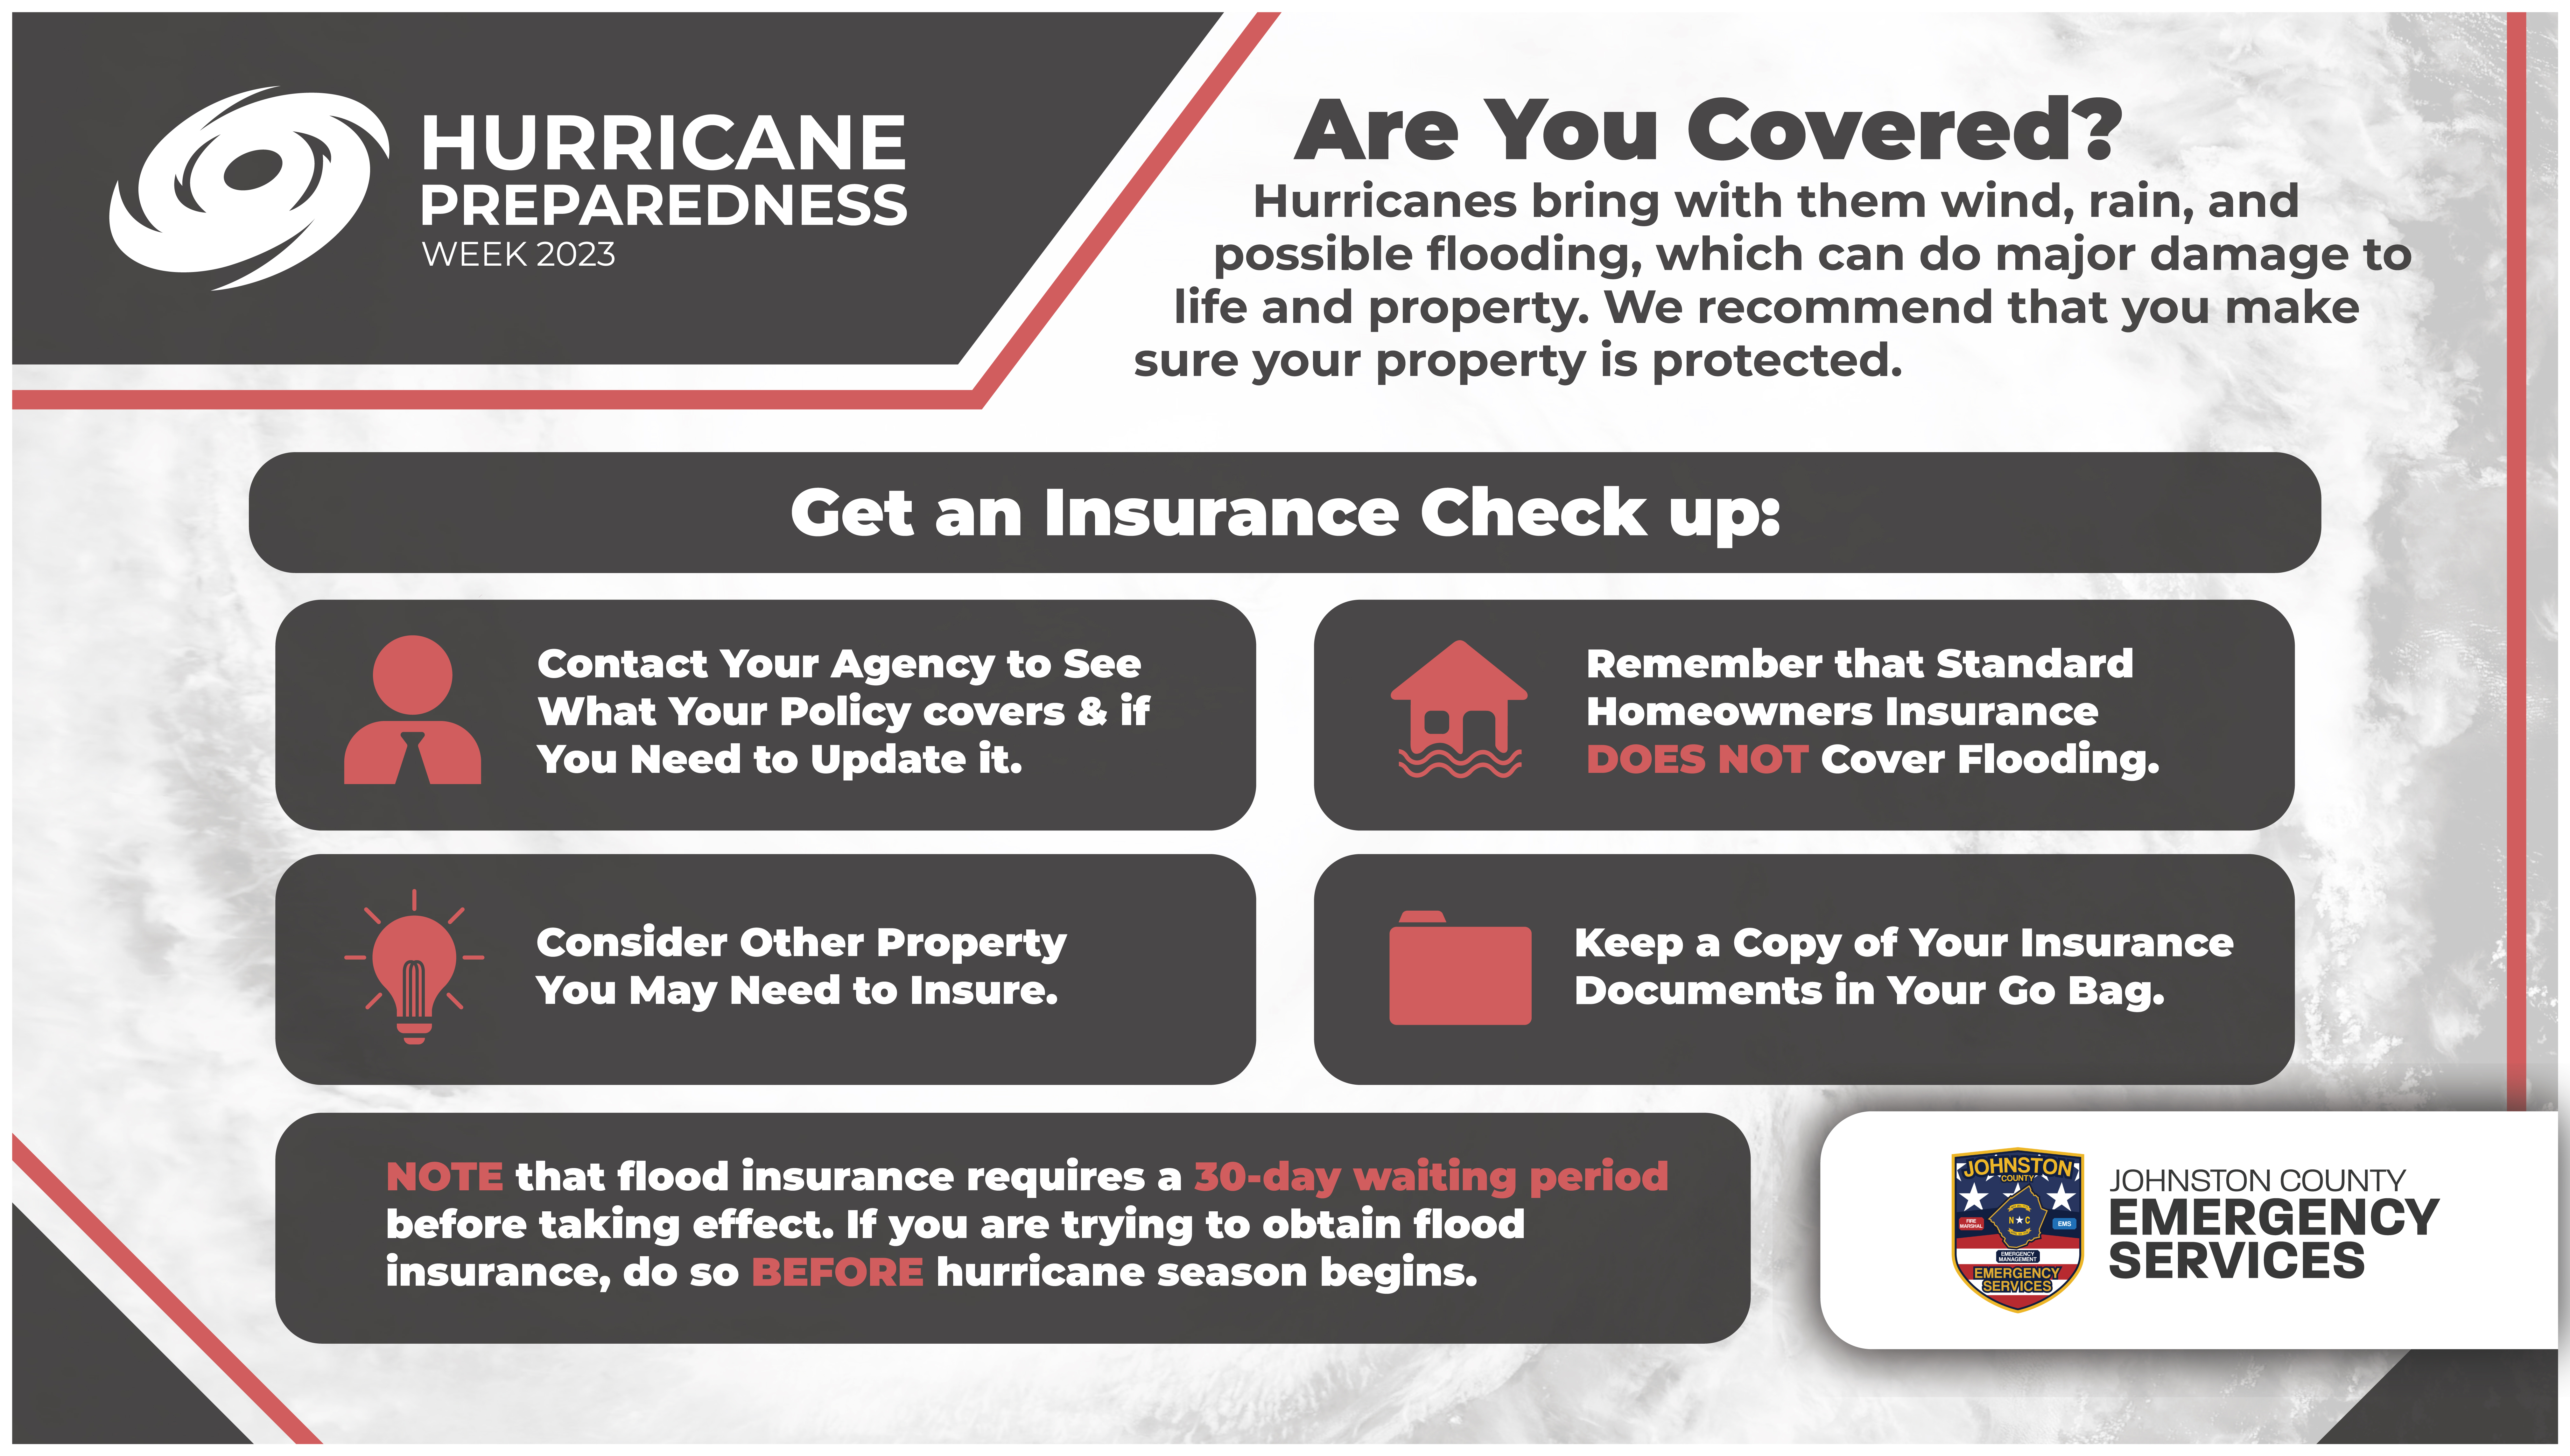 Hurricane Preparedness Week | Insurance Check Up